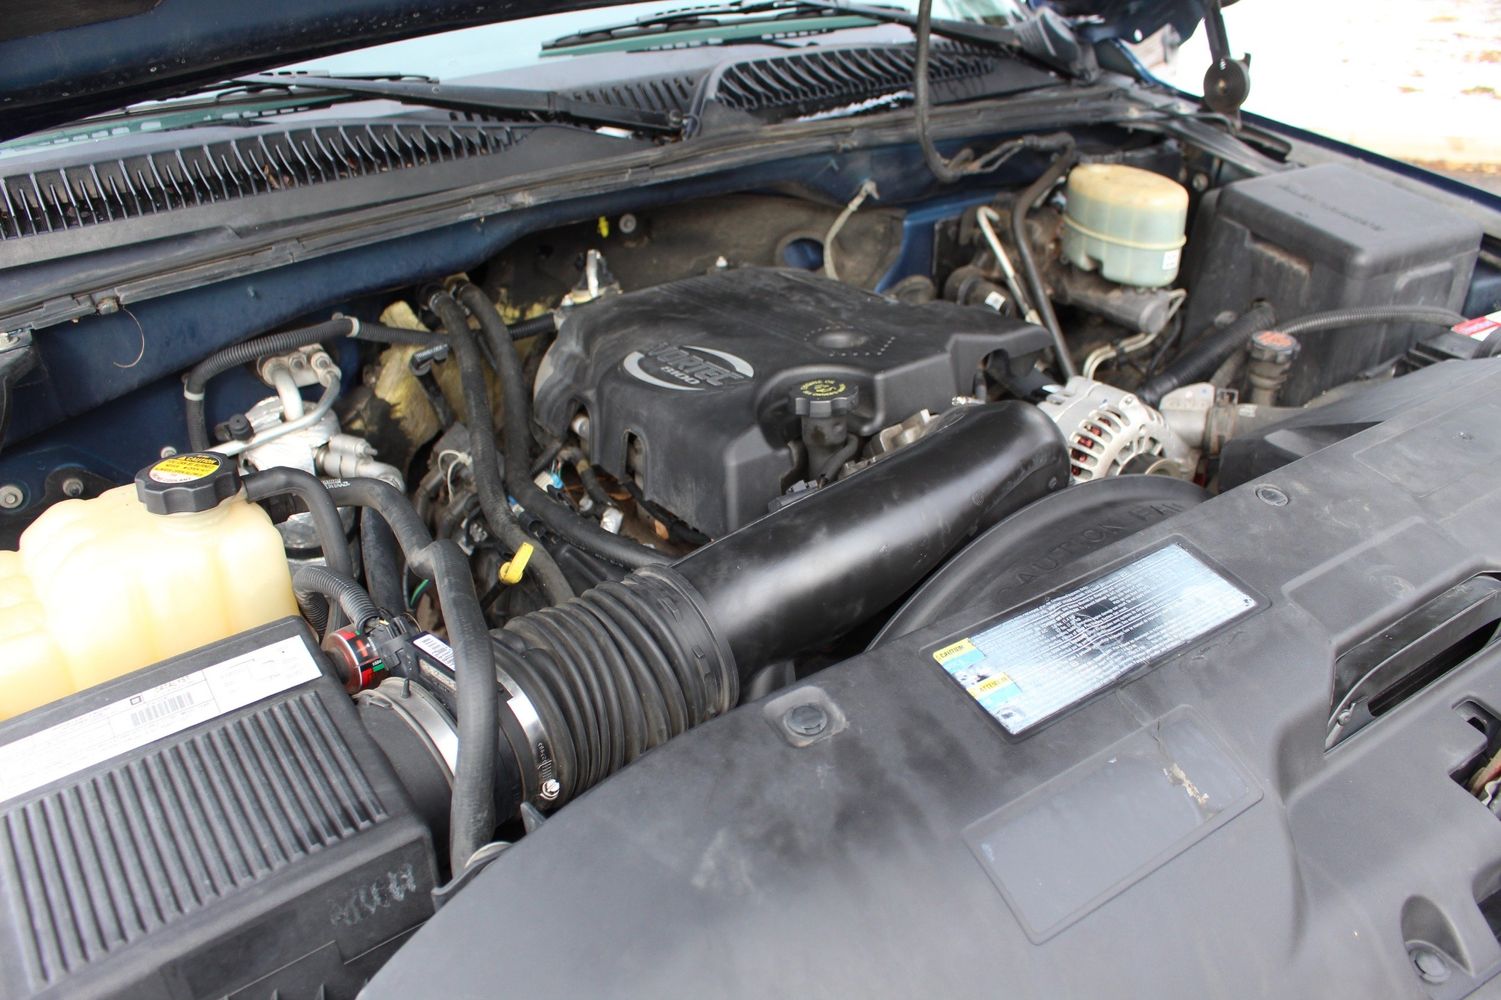 2001 Chevrolet Silverado 2500HD LS | Victory Motors of Colorado 2001 Chevrolet Silverado 2500hd Engine 8.1 L V8